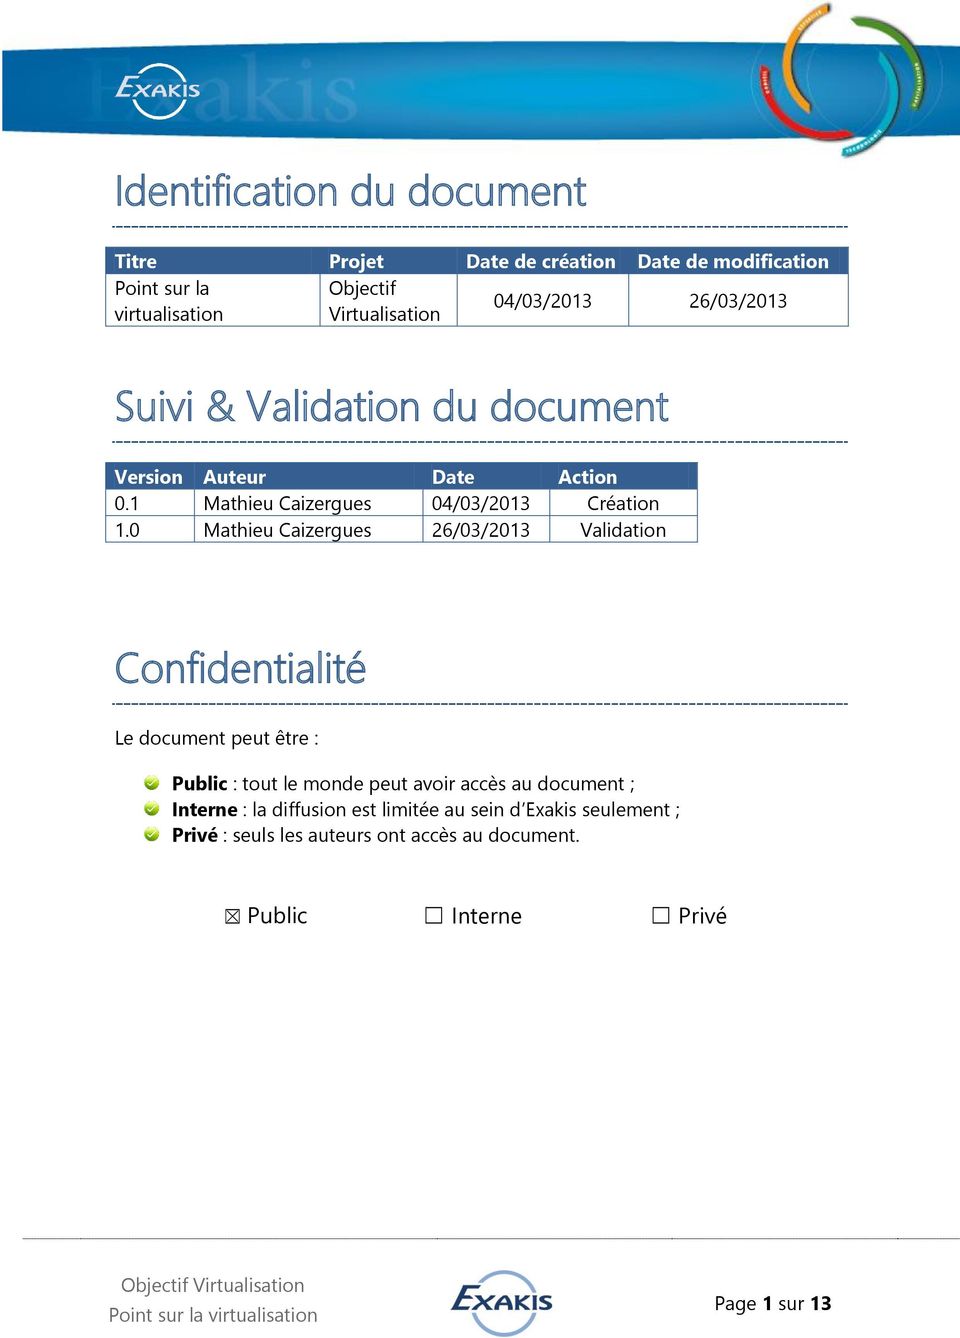 0 Mathieu Caizergues 26/03/2013 Validation Confidentialité Le document peut être : Public : tout le monde peut avoir accès au document